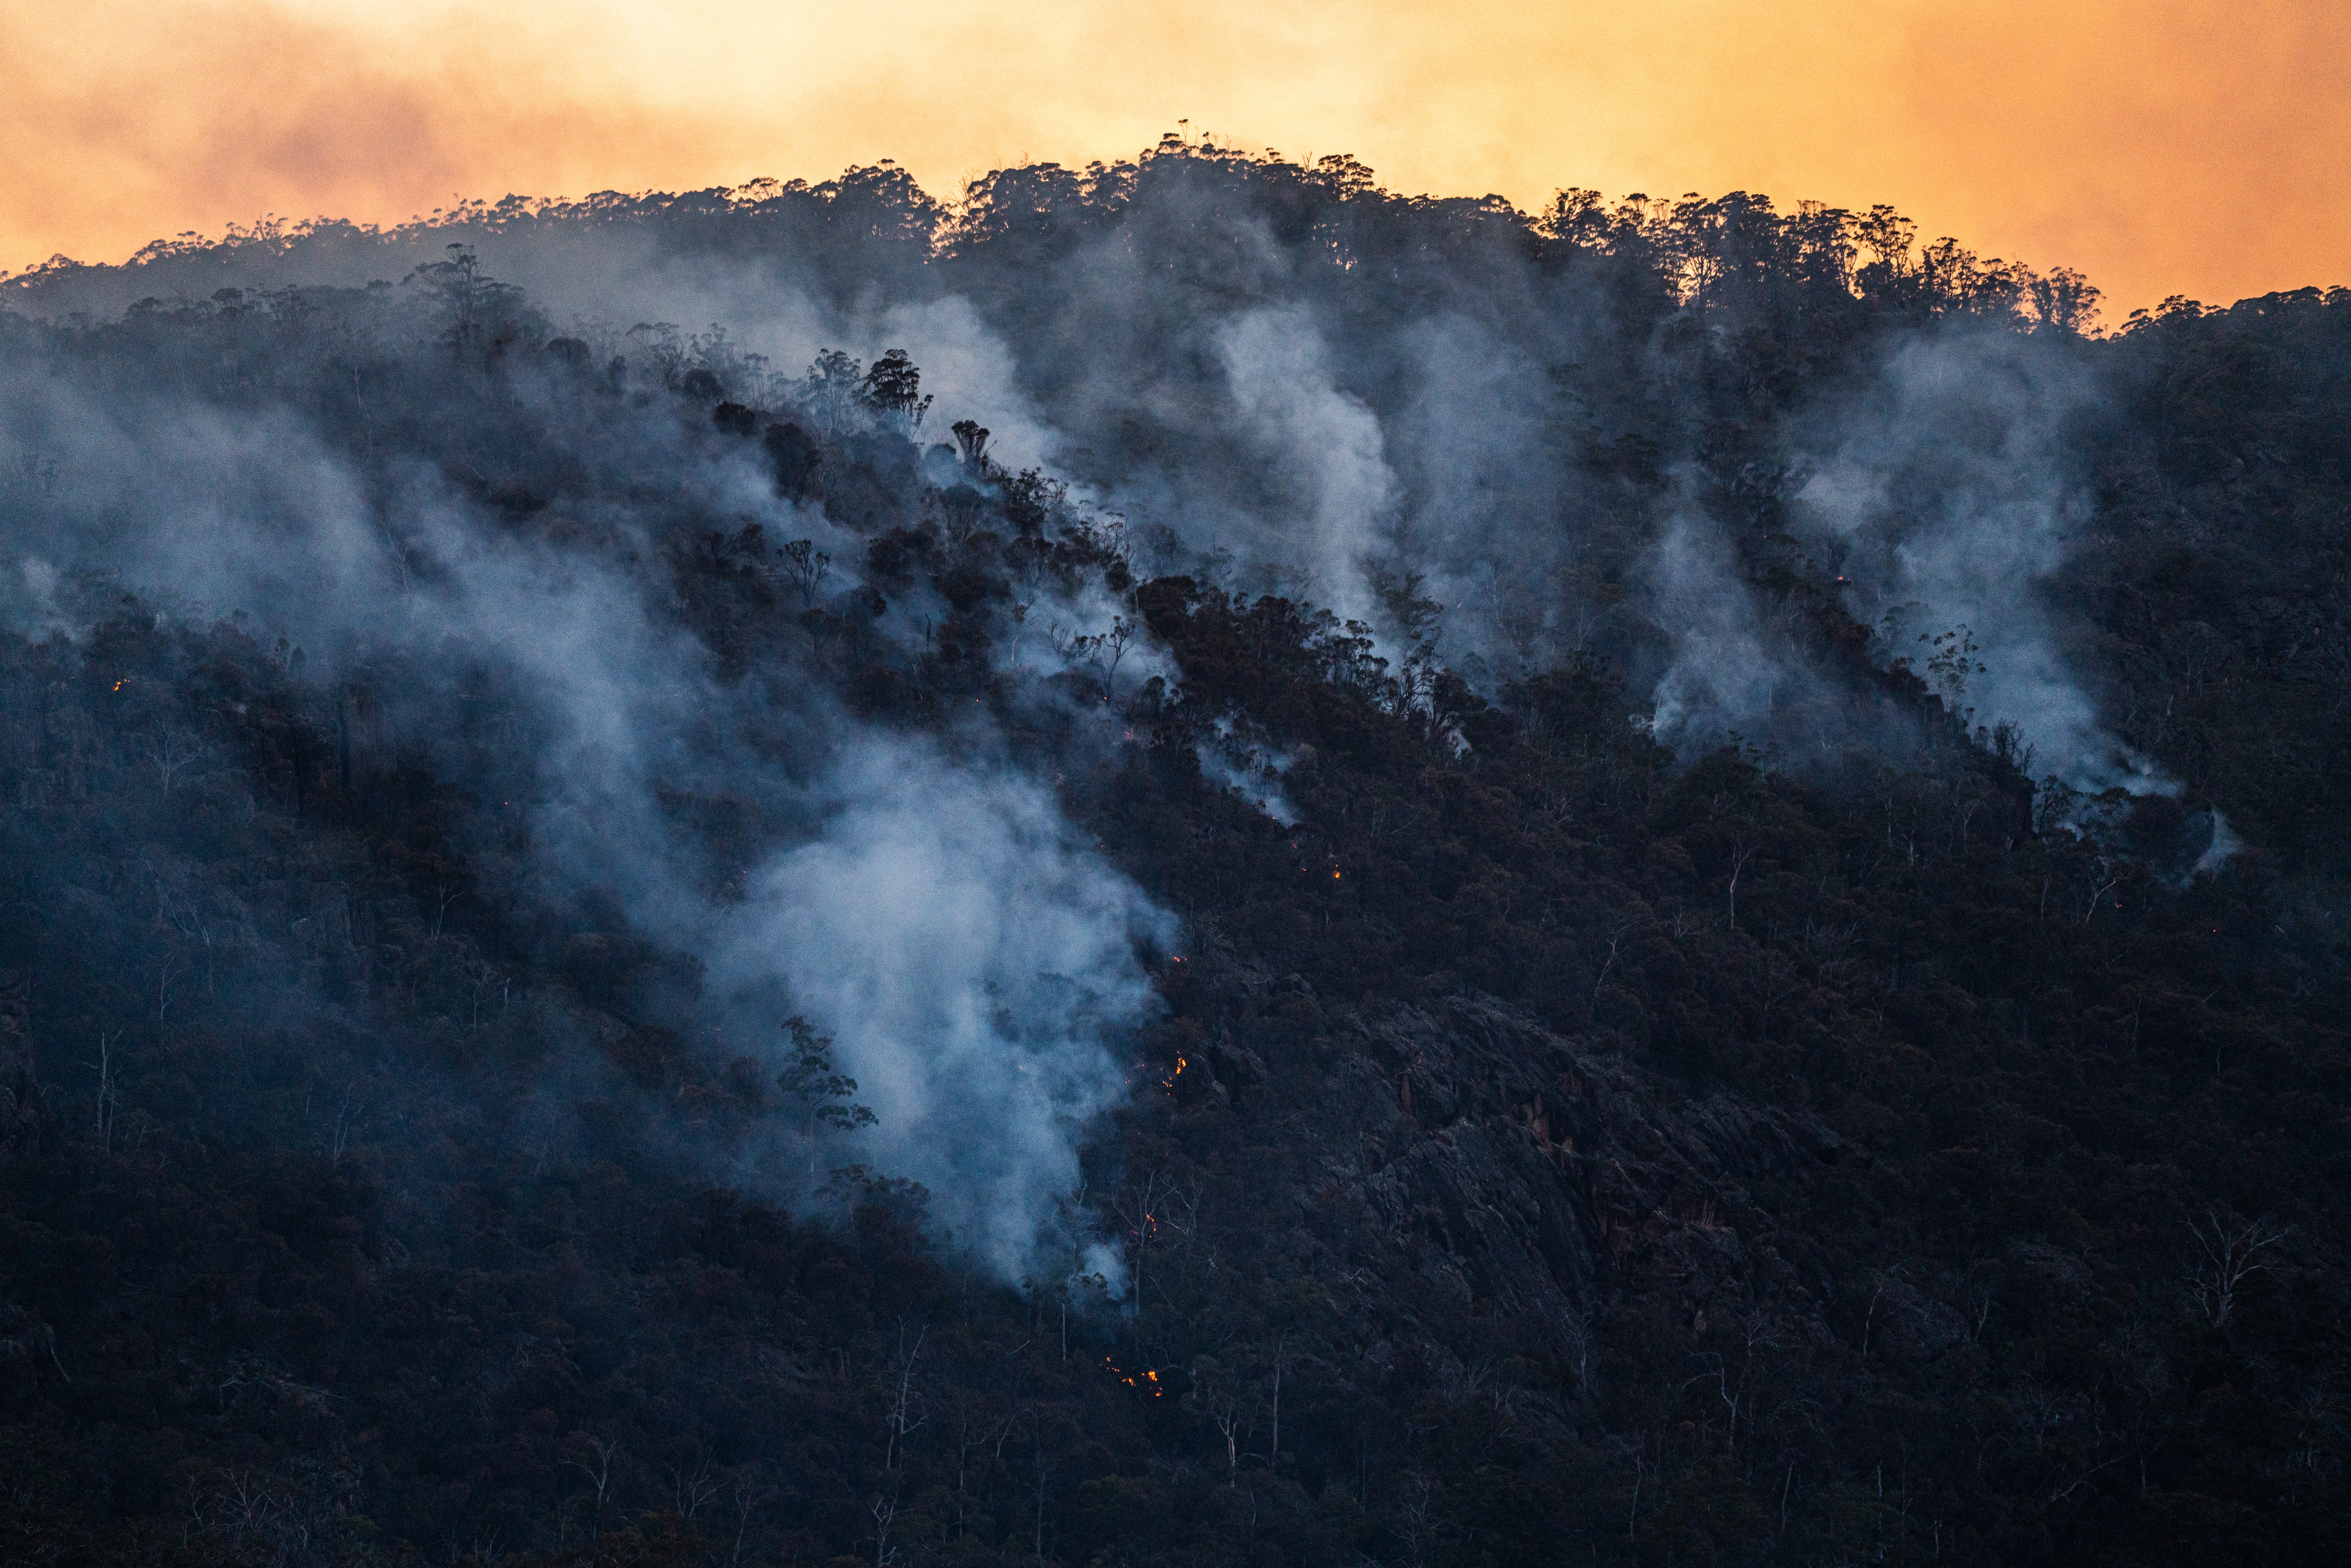 smoke rising through mountain treetops from an Australian bushfire